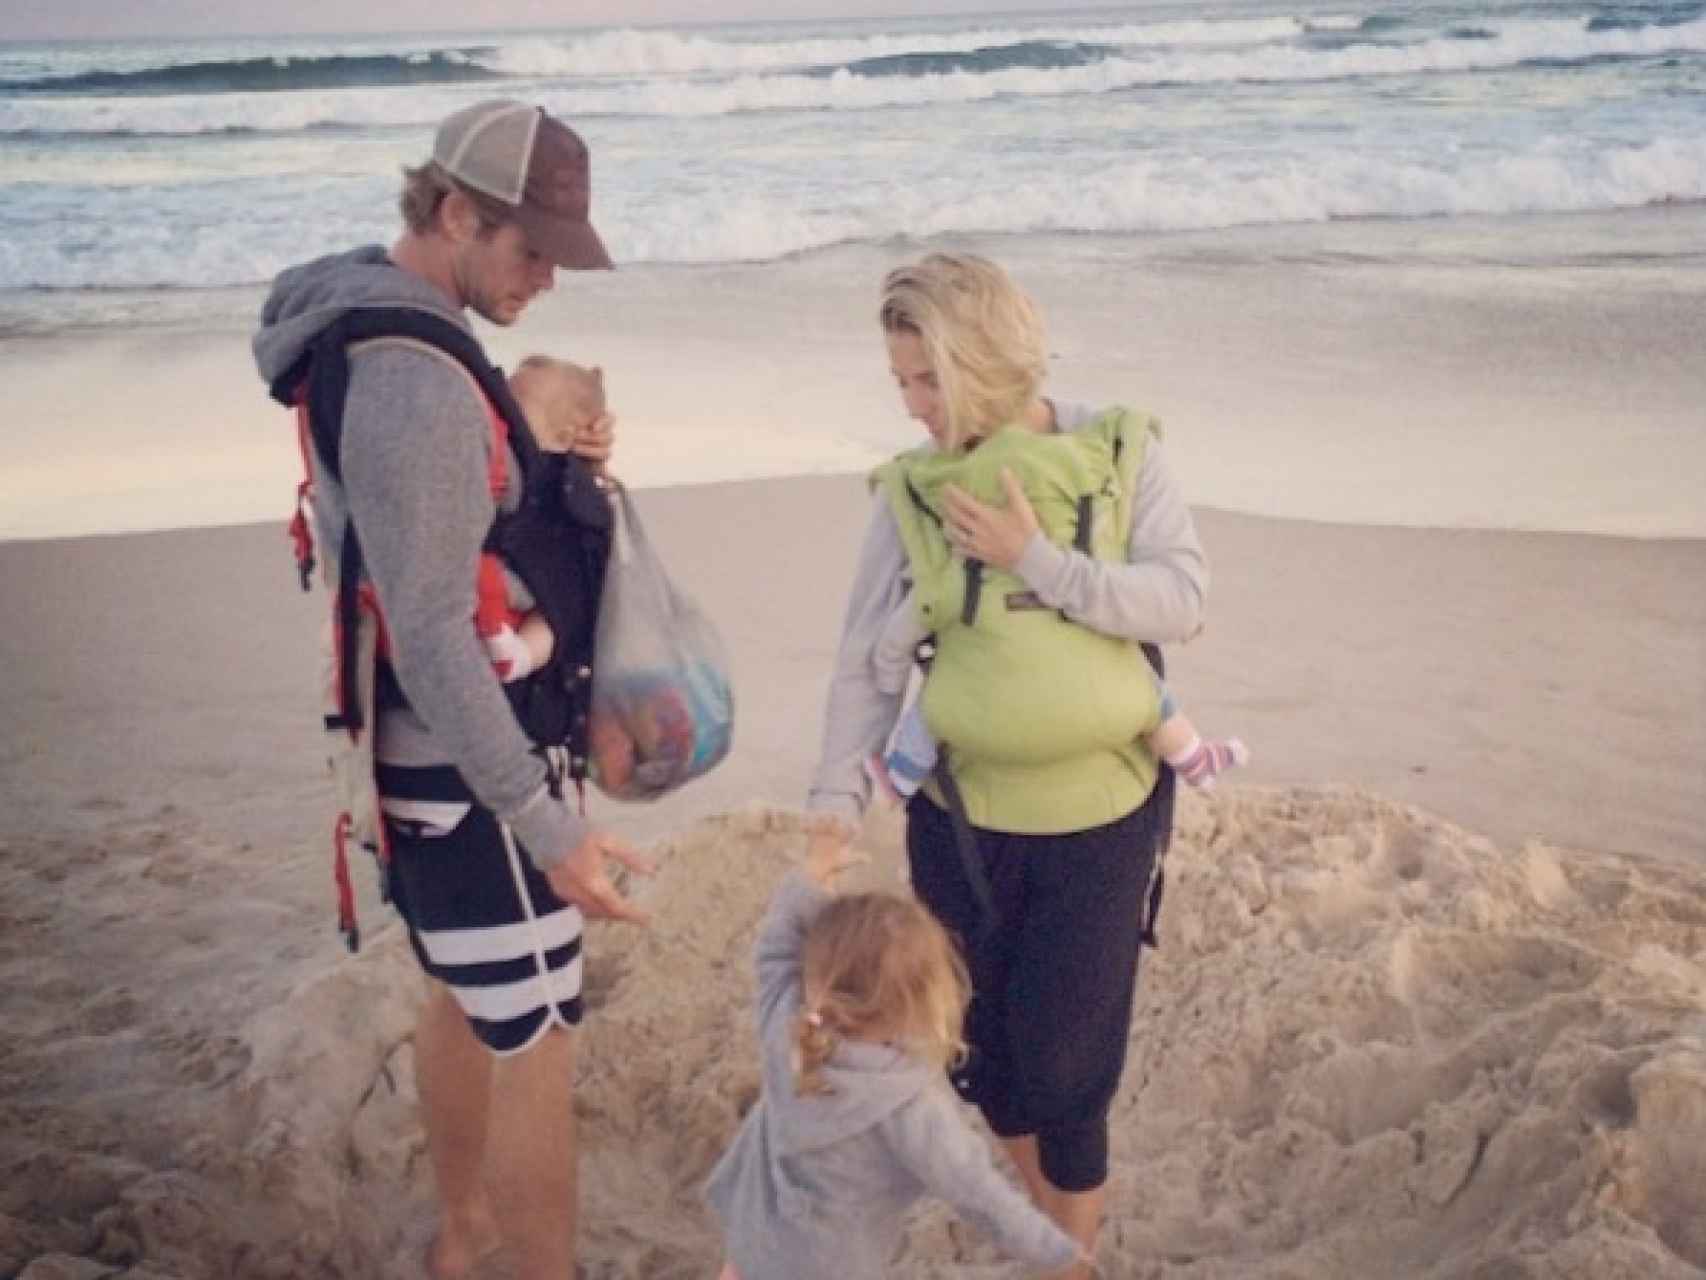 La familia Hemsworth Pataky en la playa.